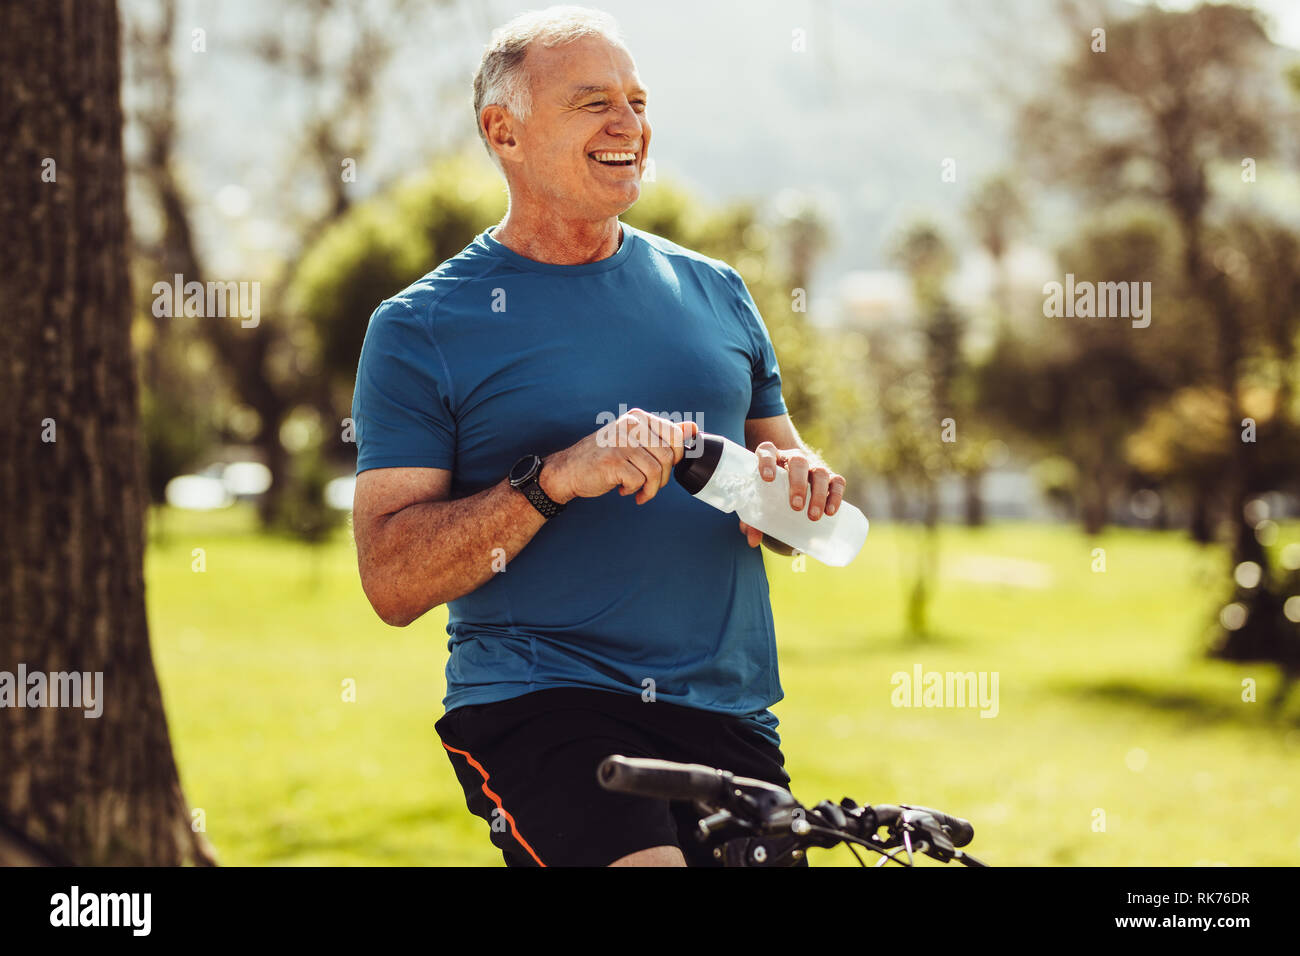 Senior uomo in usura fitness acqua potabile seduto su una bicicletta. Allegro senior persona fitness prendendo una pausa durante la pratica del ciclismo in un parco. Foto Stock